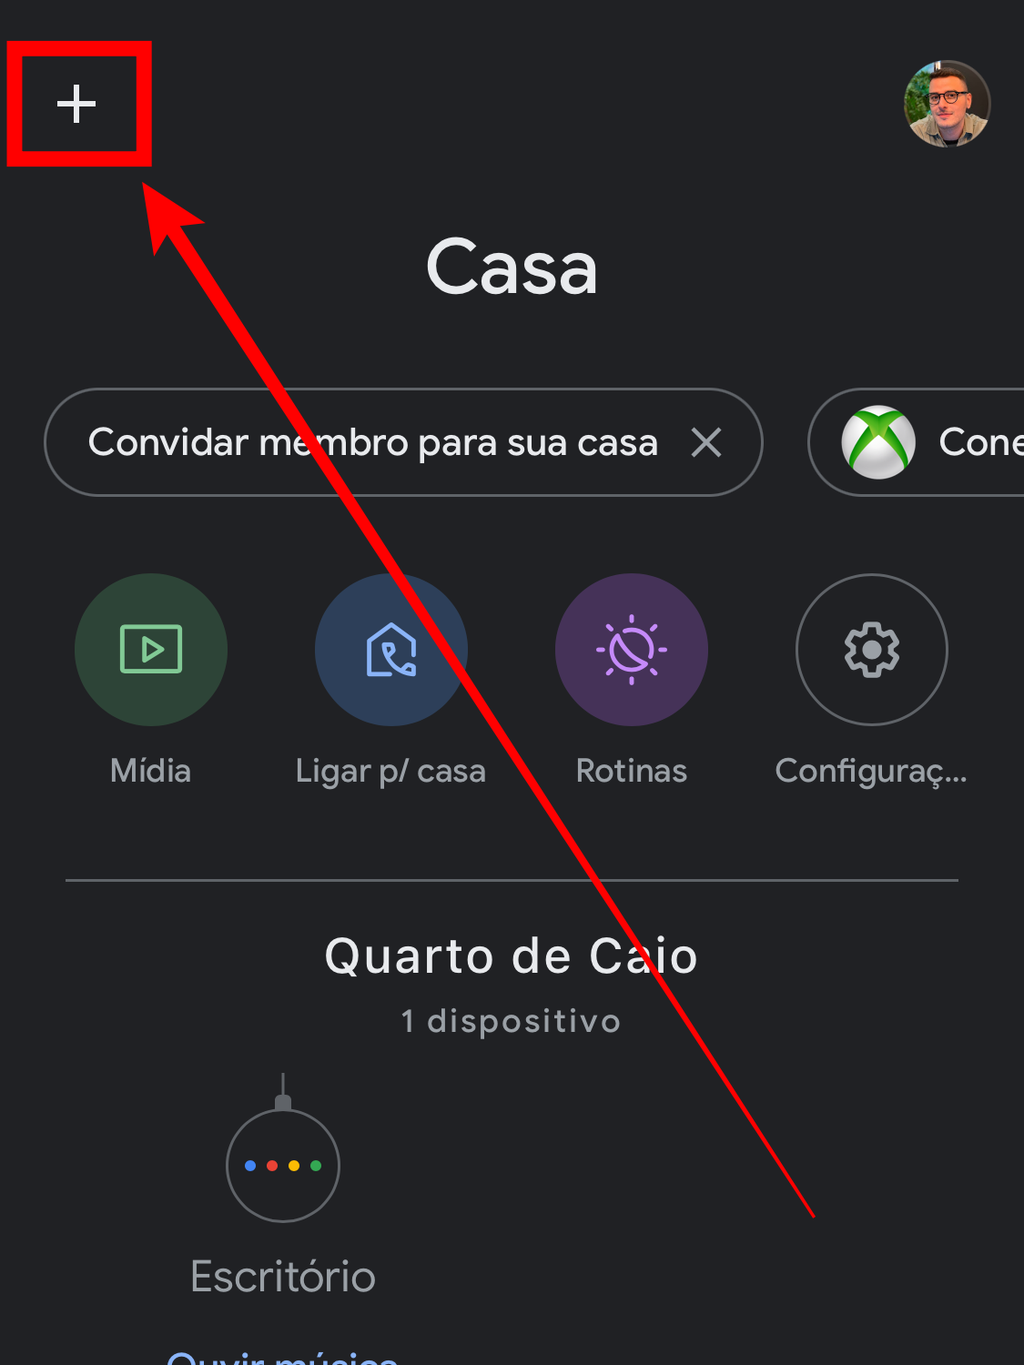 Abra o app Google Home e toque em "+" para adicionar um novo dispositivo (Captura de tela: Caio Carvalho)